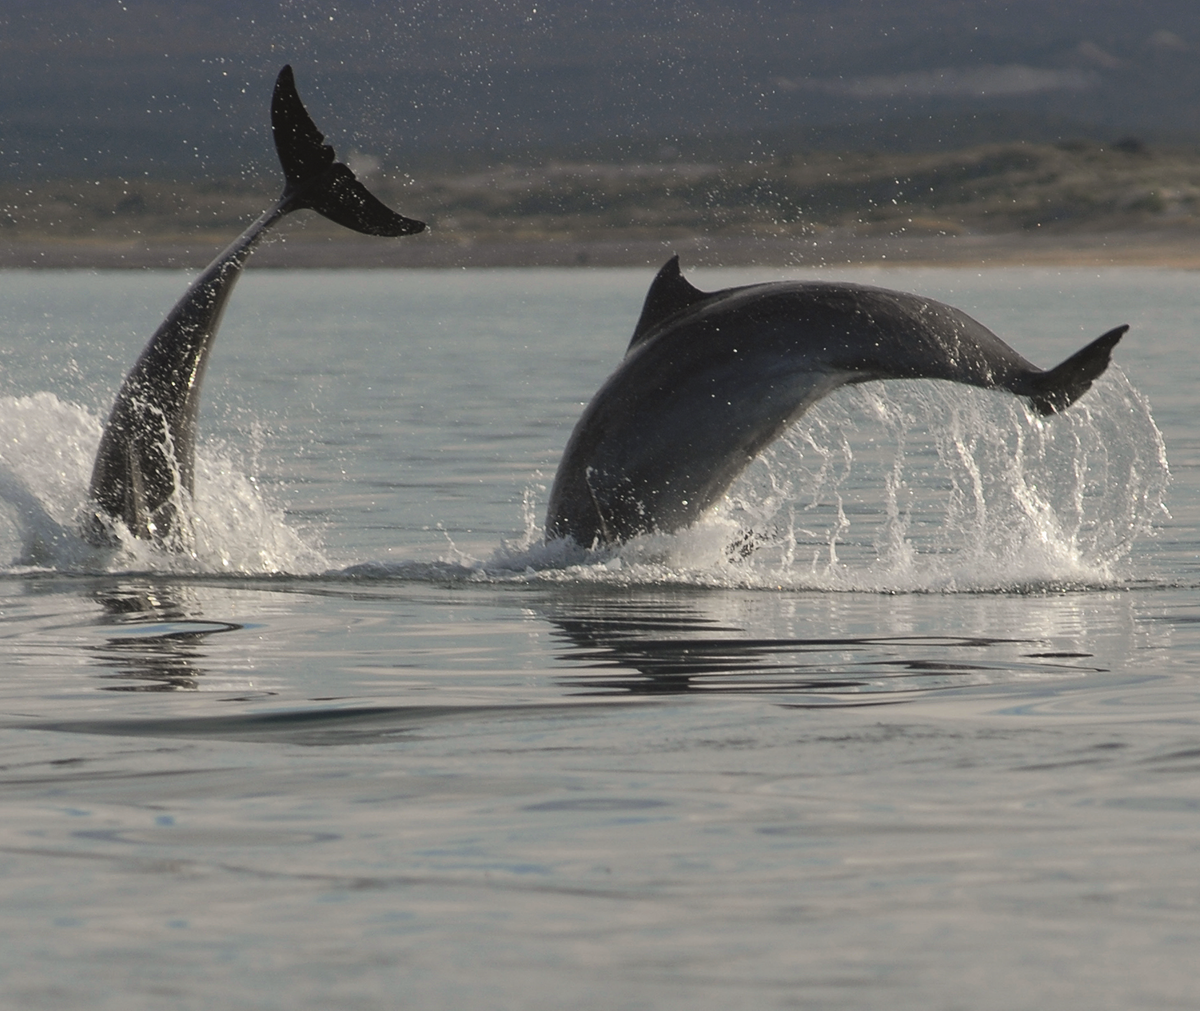 La tonina es una especie de delfín. Pueden medir más de 2,5 metros y pesar 350 kilogramos Crédito F. Azara